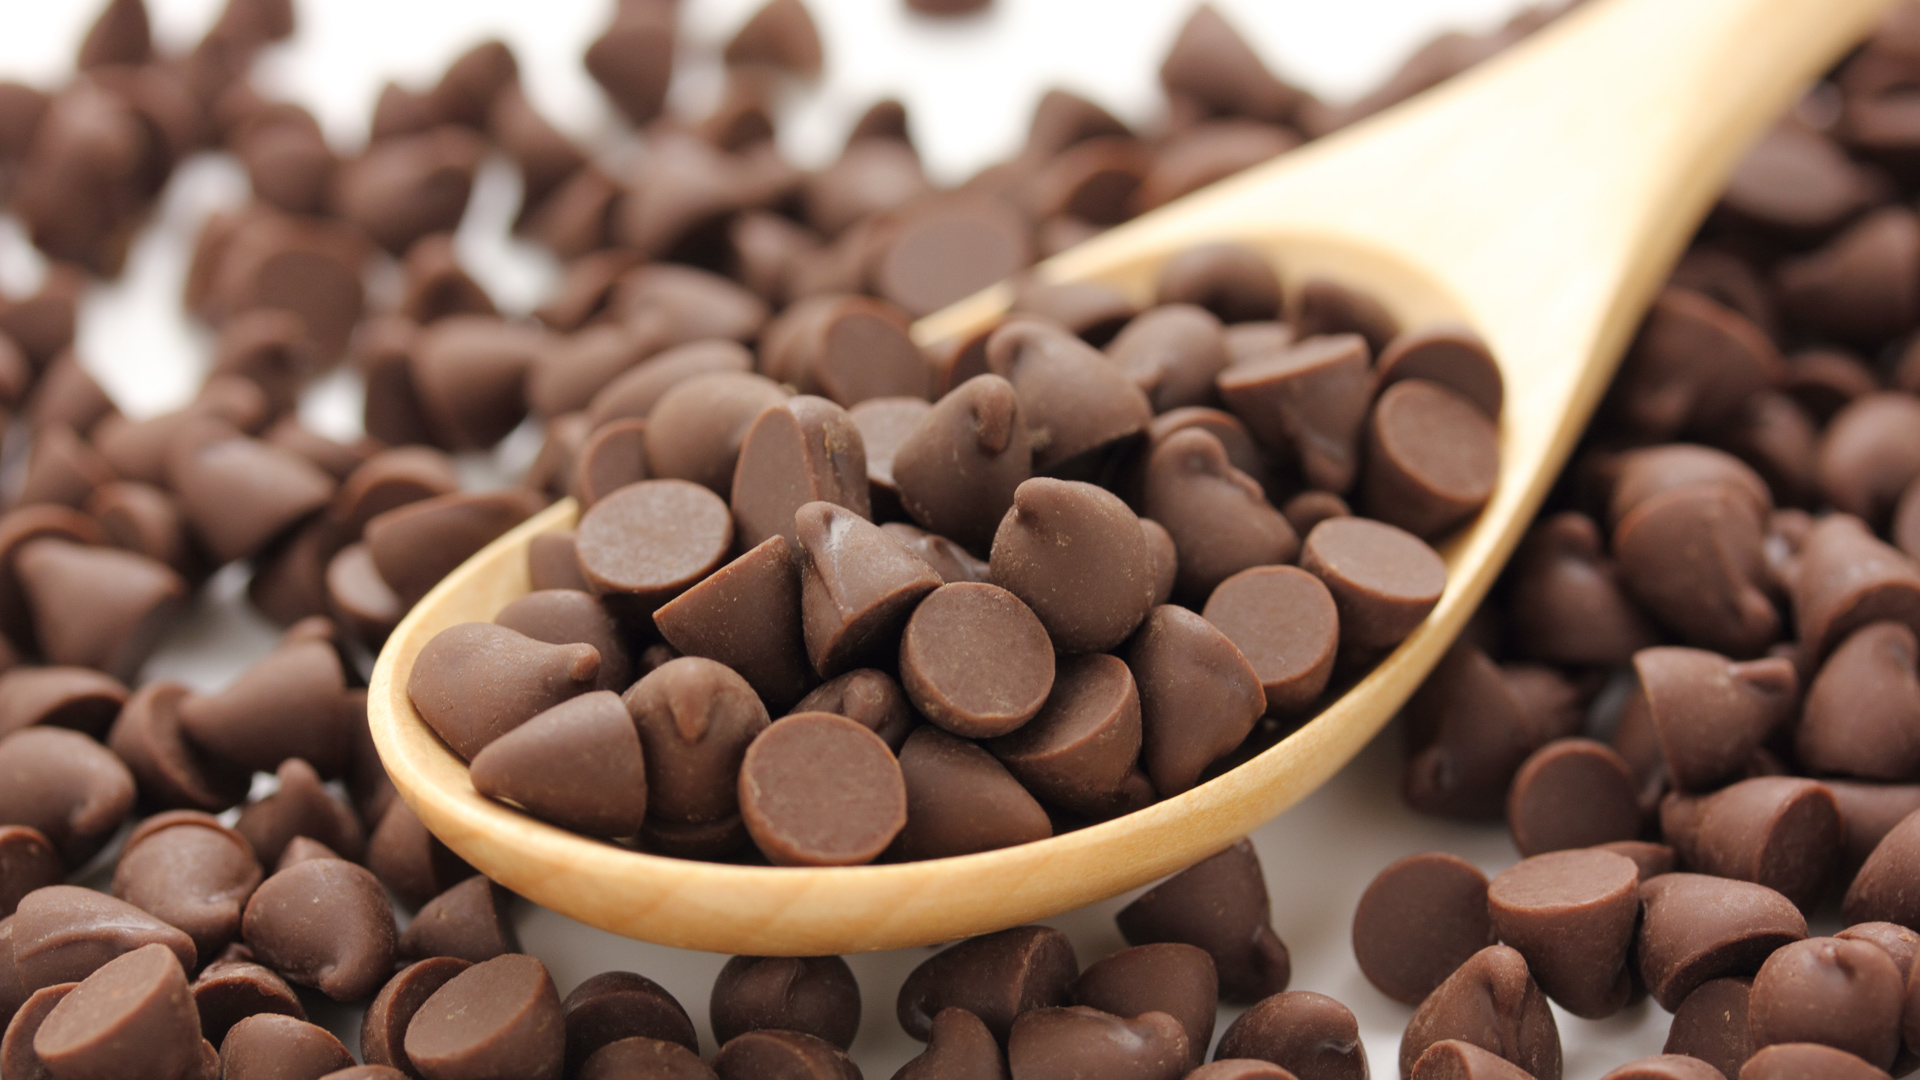 Рецепты с шоколадными каплями. Шоколадные дропсы Barry Callebaut. Бельгийский шоколад дропсы. Шоколадные чипсы Choco Chips. Молочный шоколад дропсы.